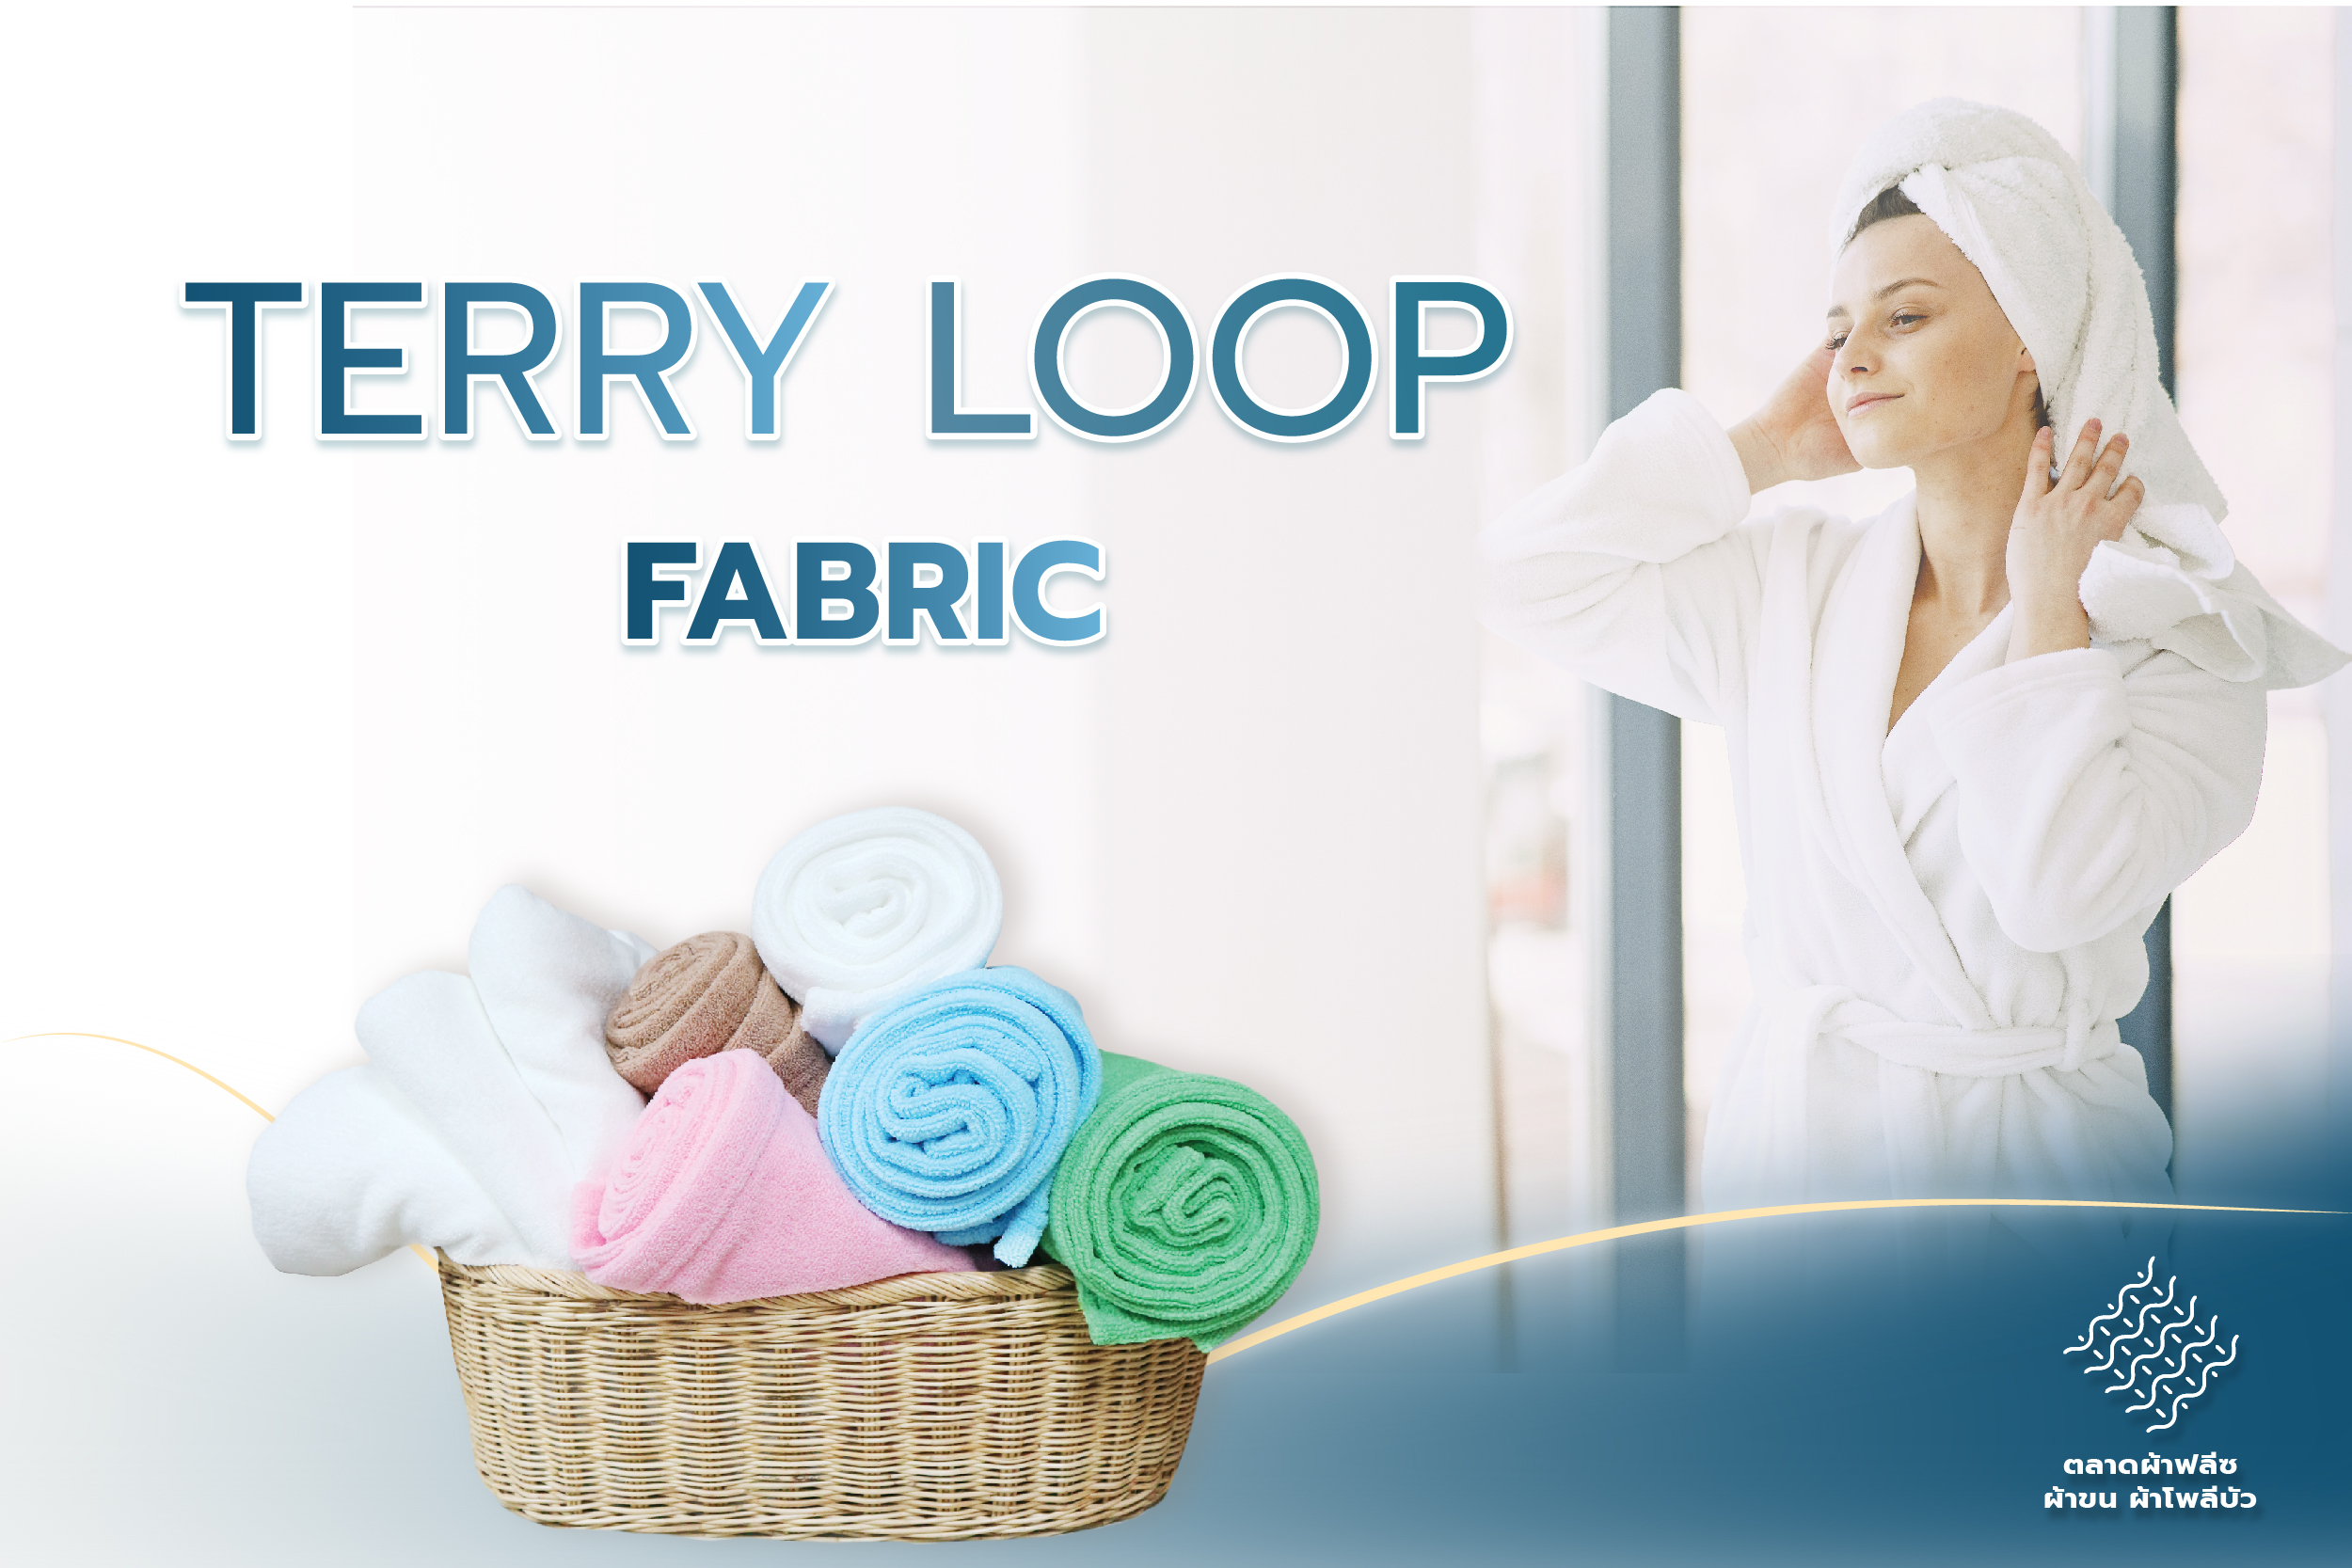 TerryLoop Fabric